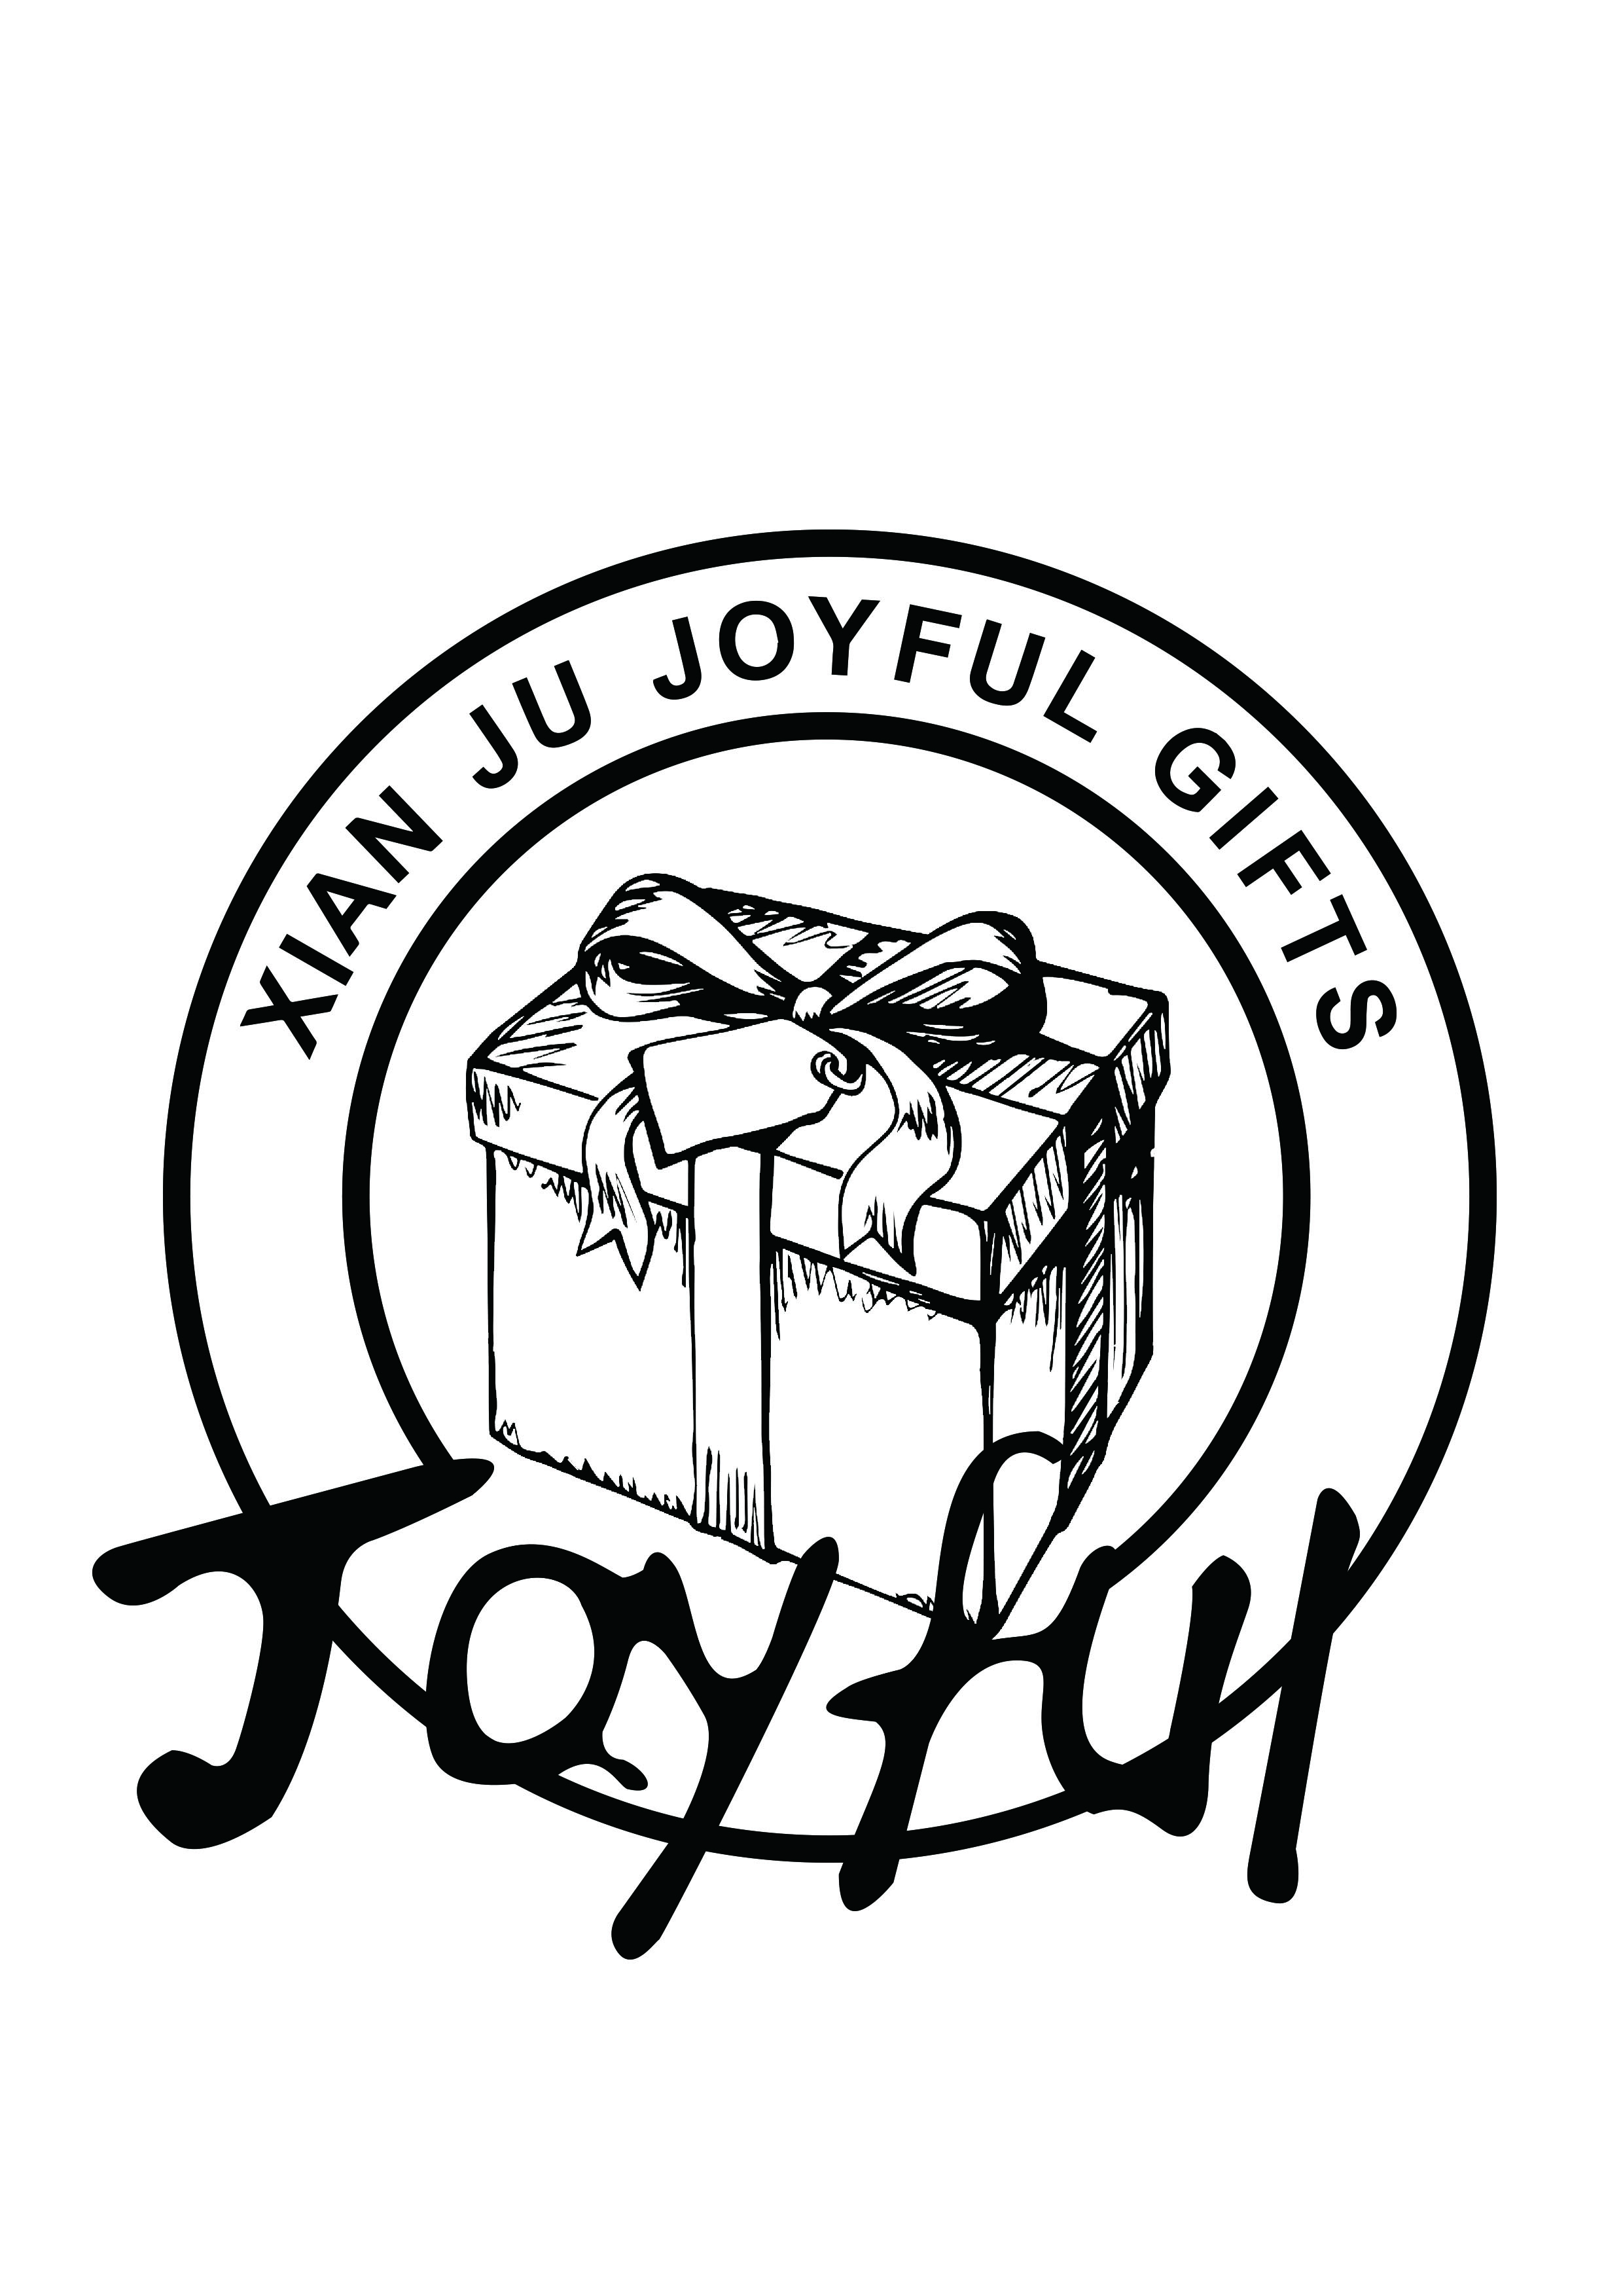 XIANJU JOYFUL GIFTS CO.,LTD.